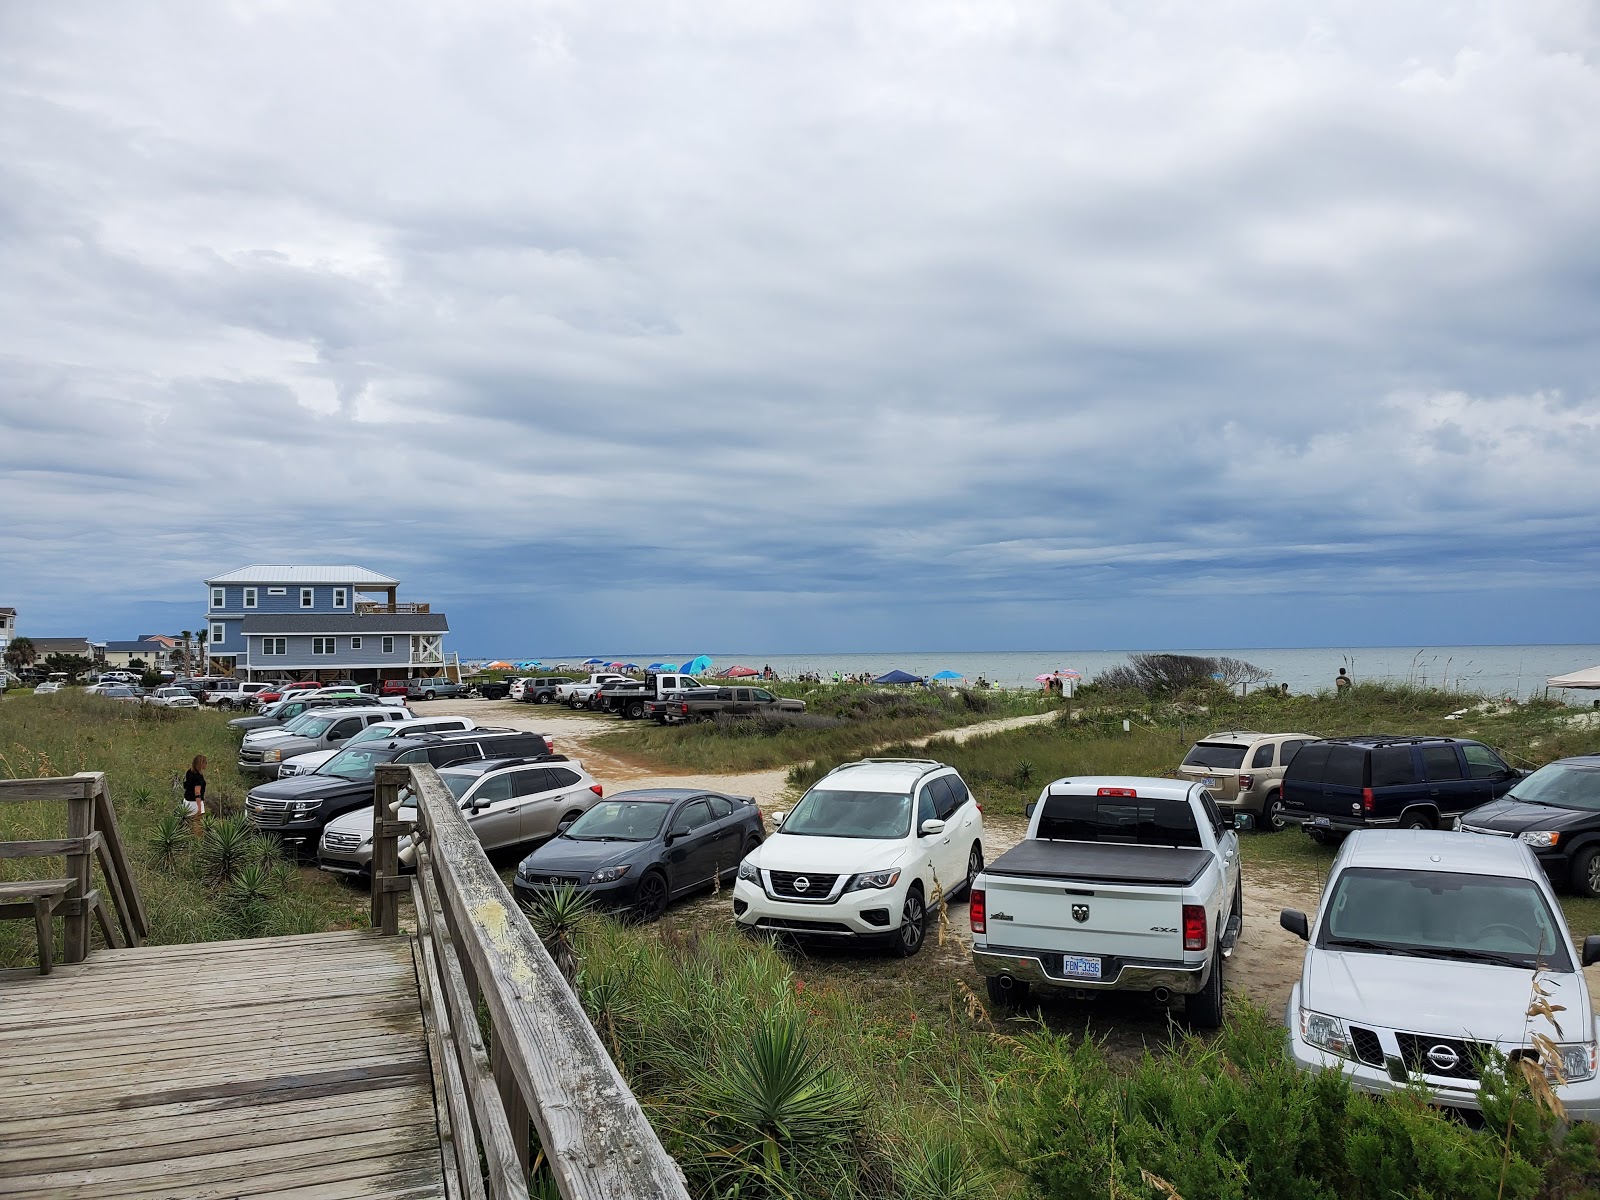 Zdjęcie Long beach - popularne miejsce wśród znawców relaksu